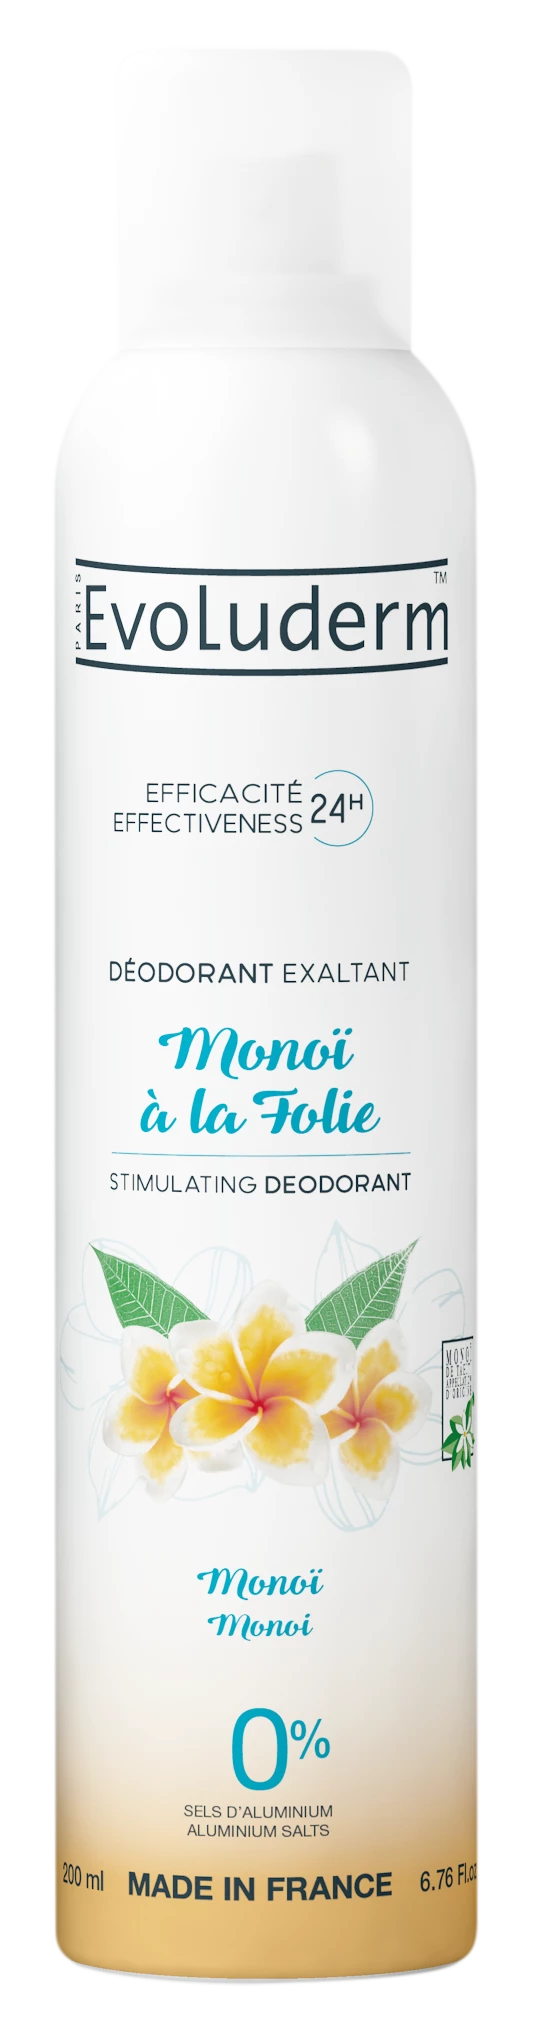 Дезодорант Monoi а-ля Folie Monoï, 200мл - EVOLUDERM